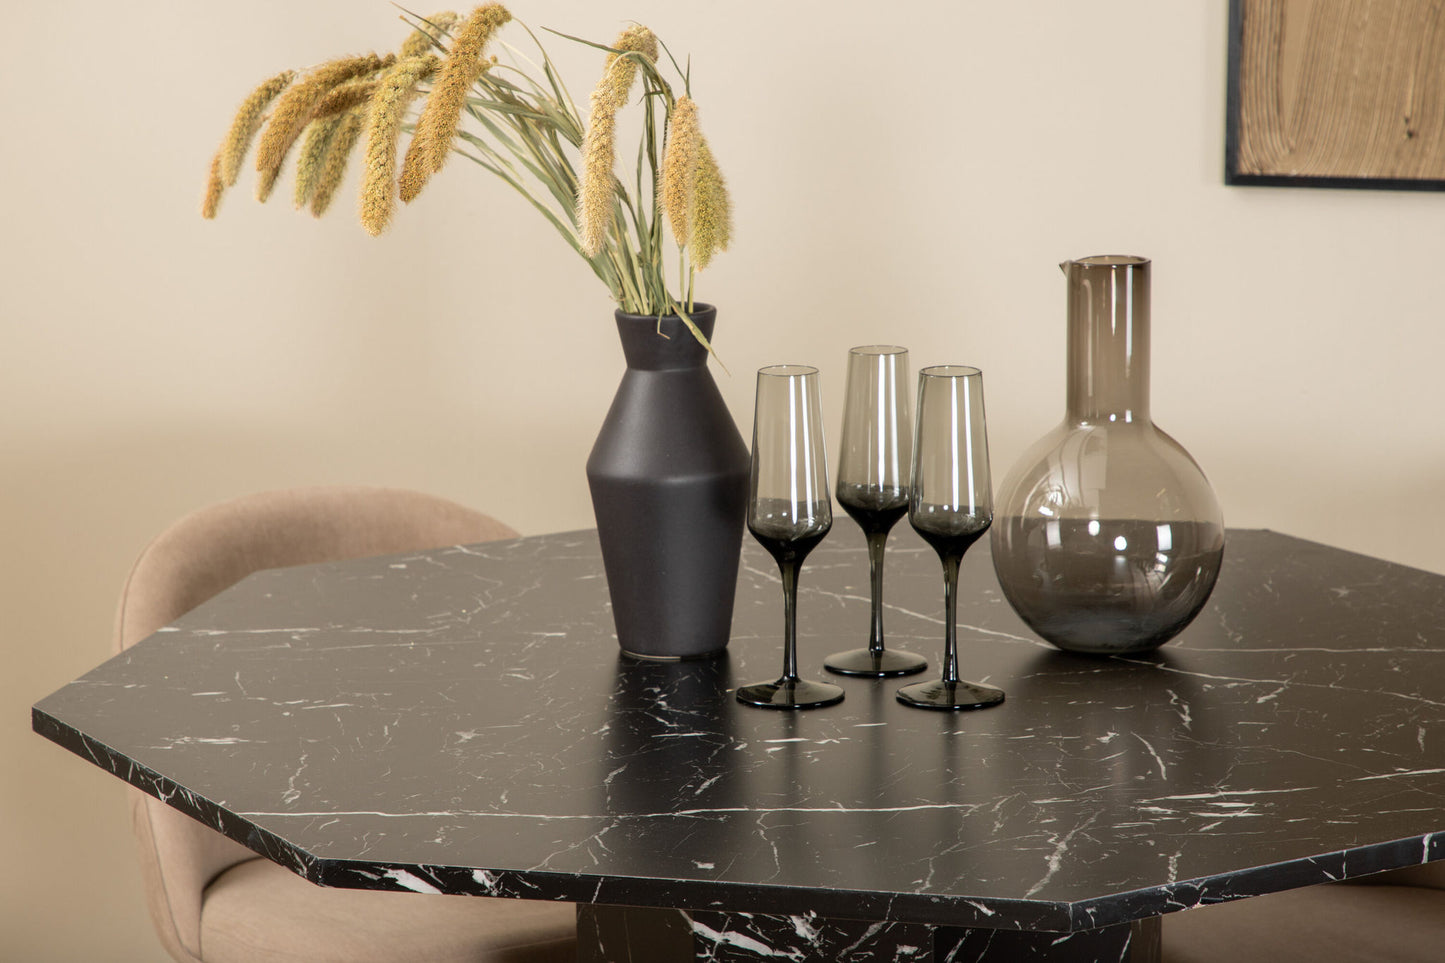 Marbs - Rundt spisebord, Sort glas Marmor+ velour syninger Stol - Sort / Beige Stof (Polyester lined)